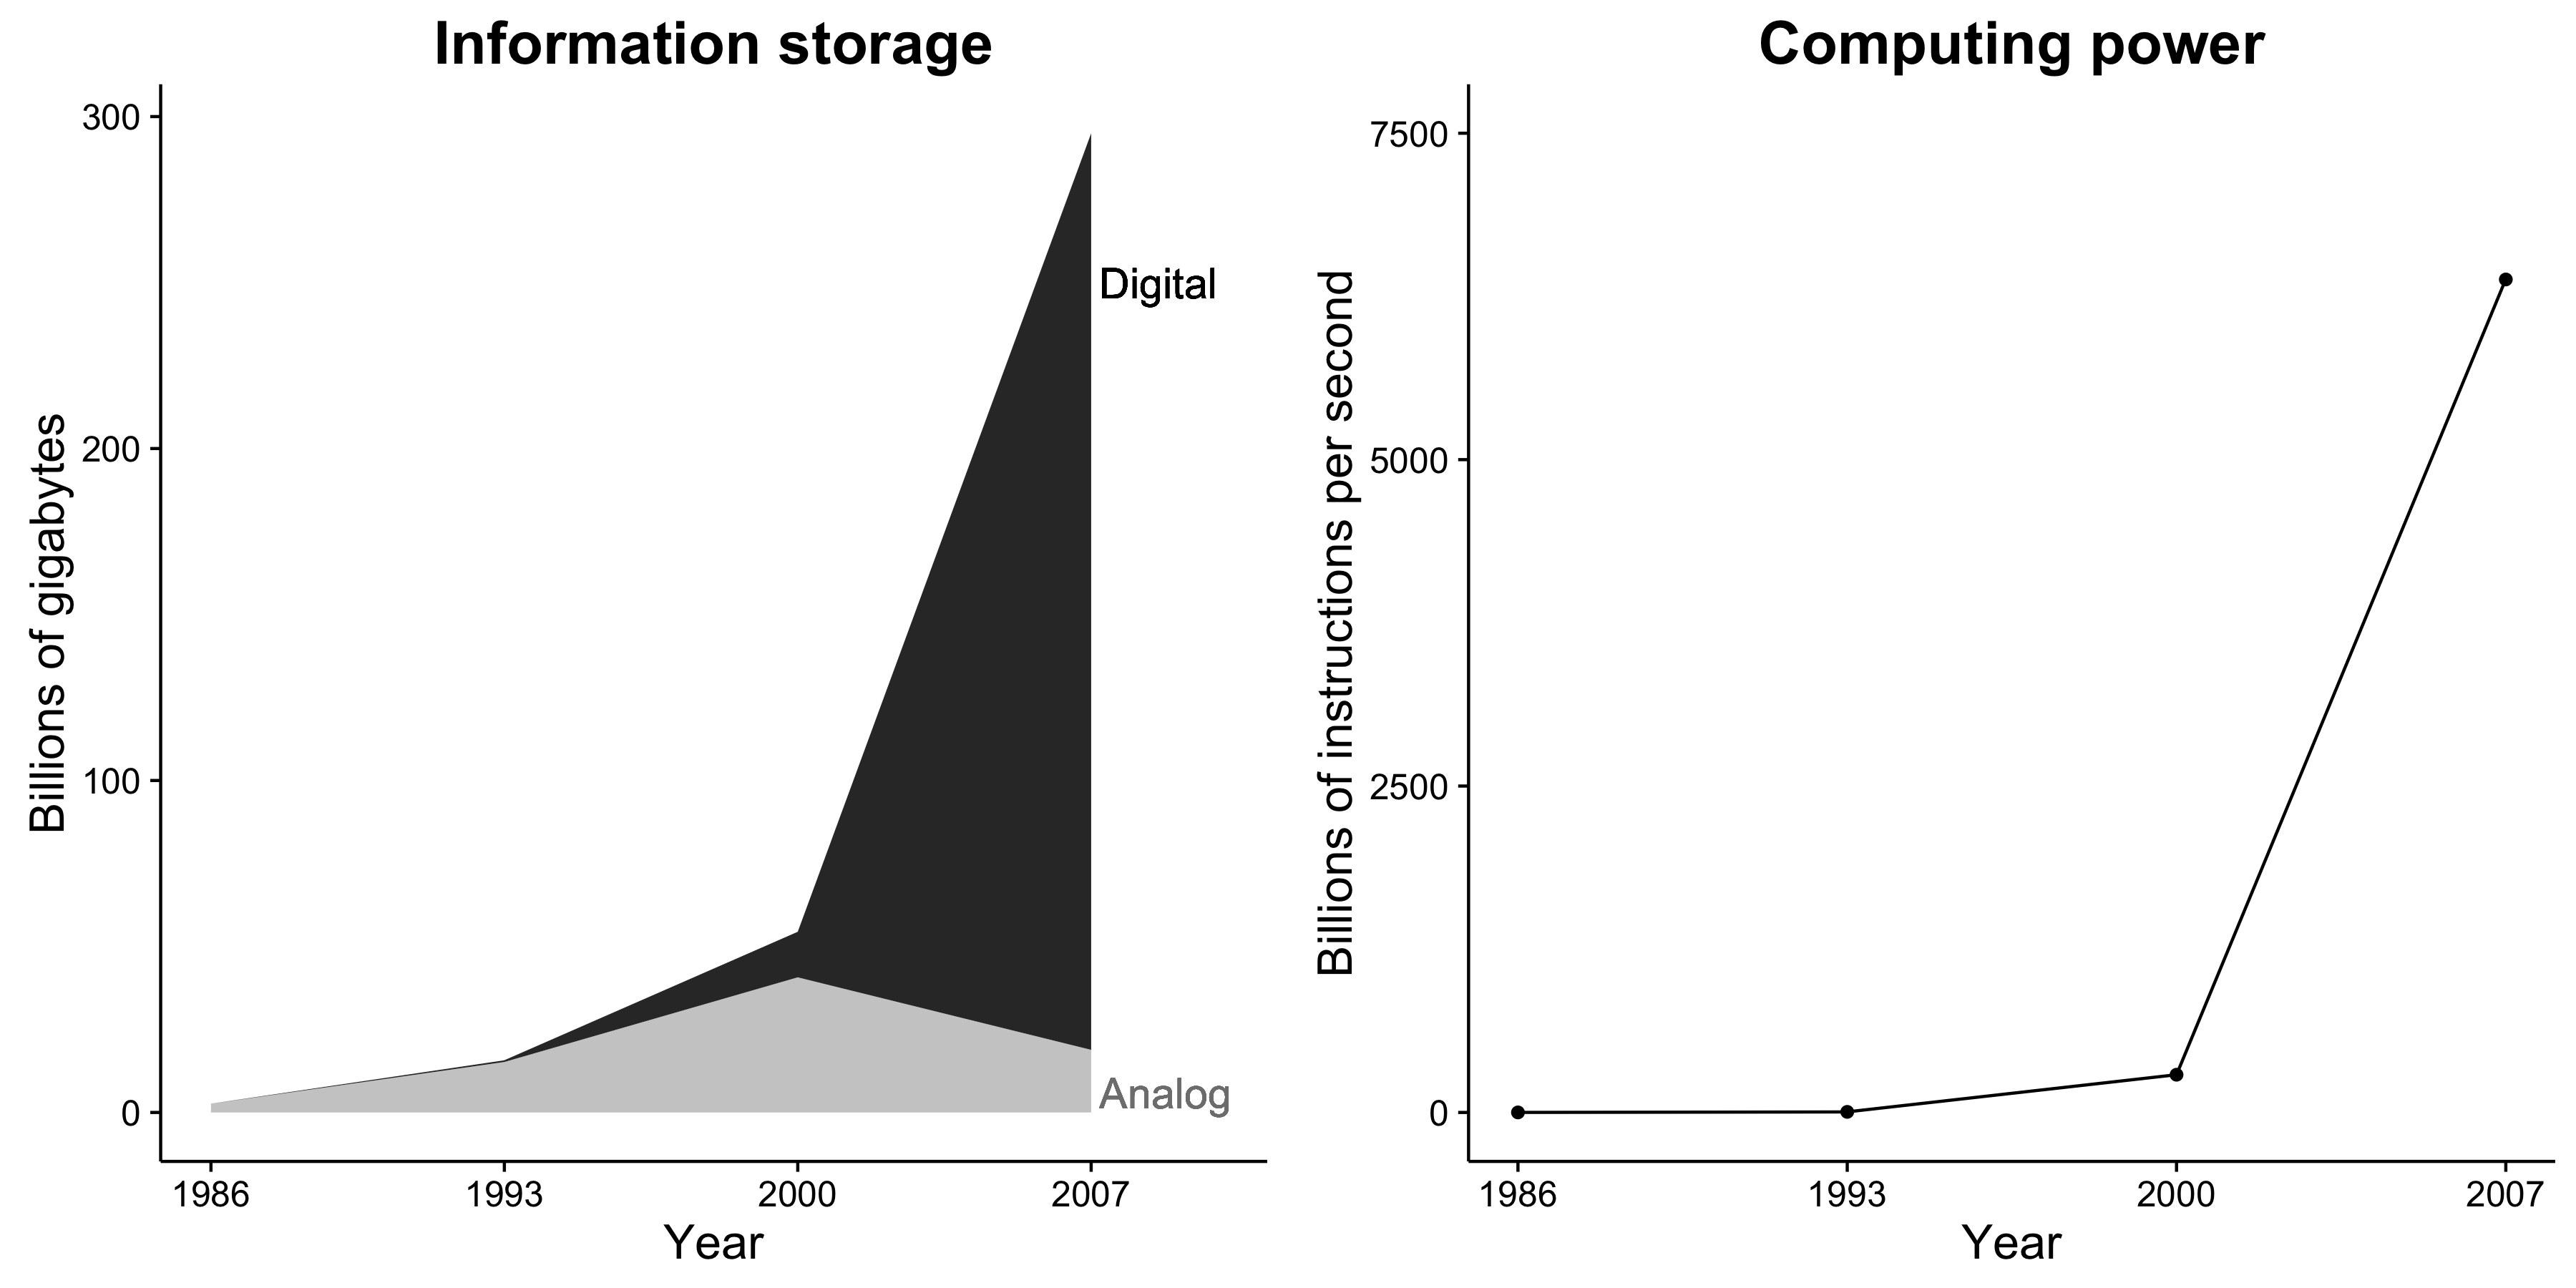 Figura 1.1: Capacitatea de stocare a informațiilor și puterea de calcul cresc dramatic. În plus, stocarea informației este aproape exclusiv digitală. Aceste schimbări creează oportunități incredibile pentru cercetătorii sociali. Adaptat de la Hilbert și López (2011), figurile 2 și 5.